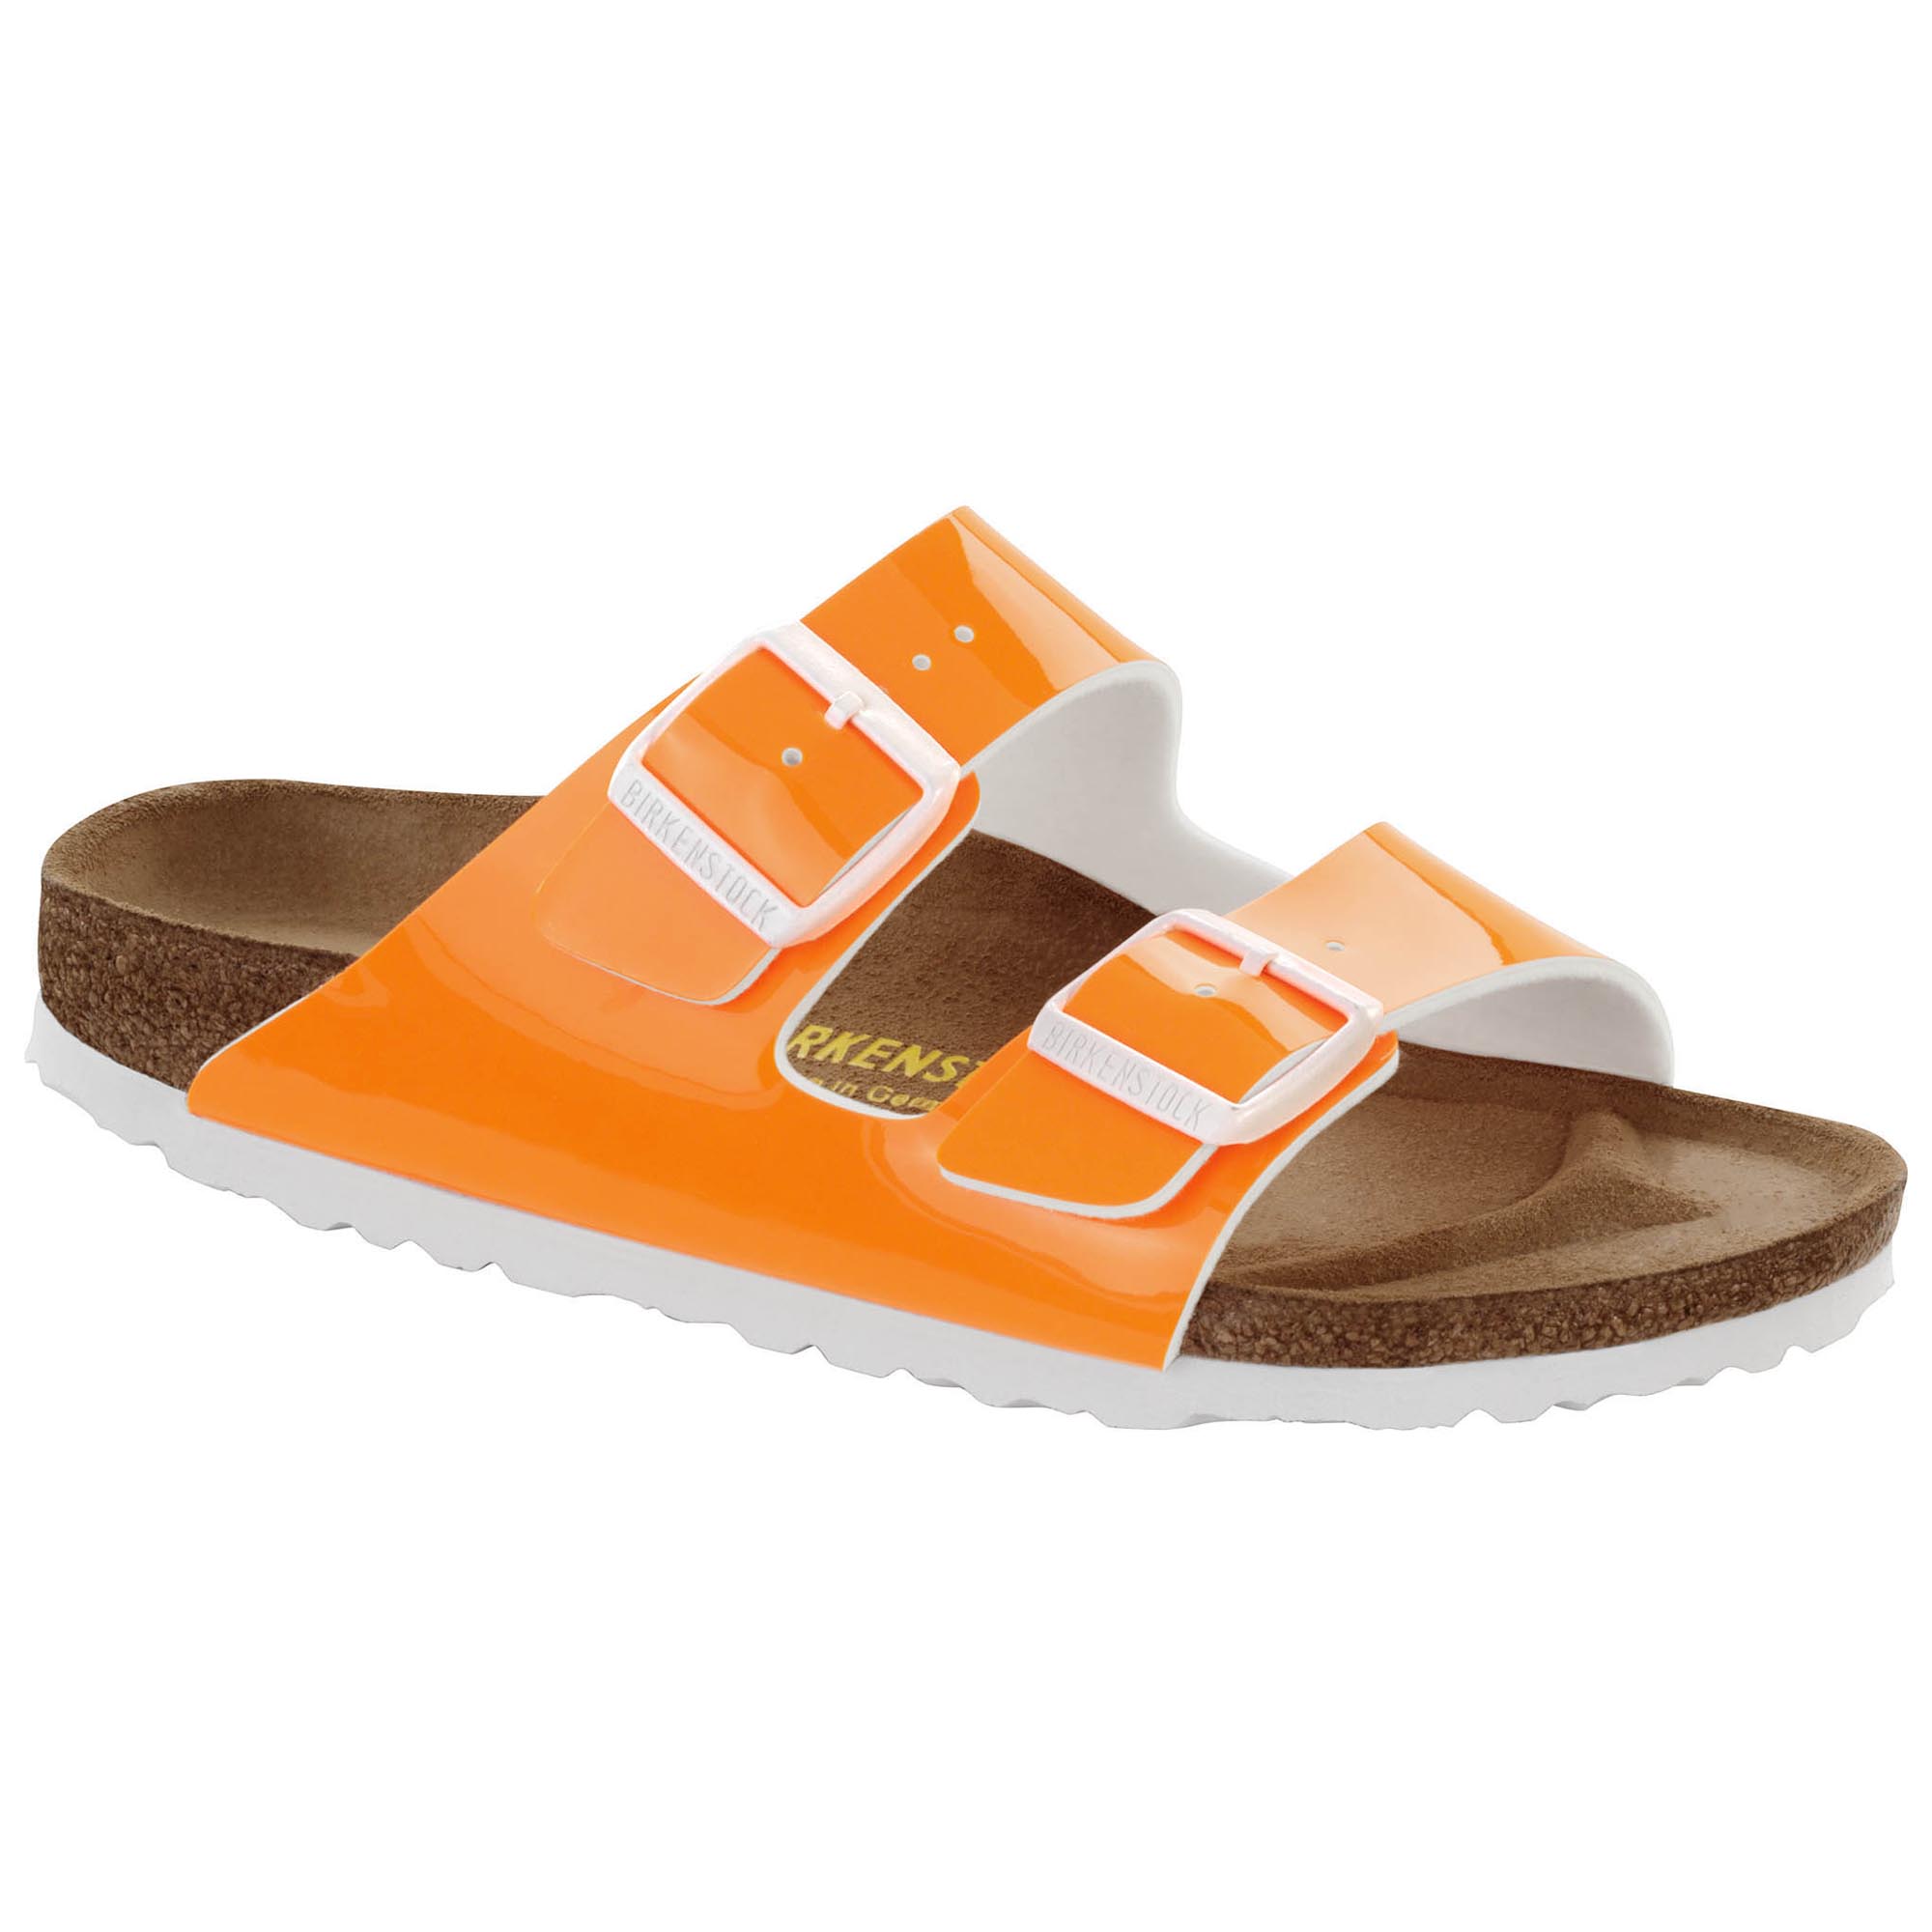 orange birkenstock sandals